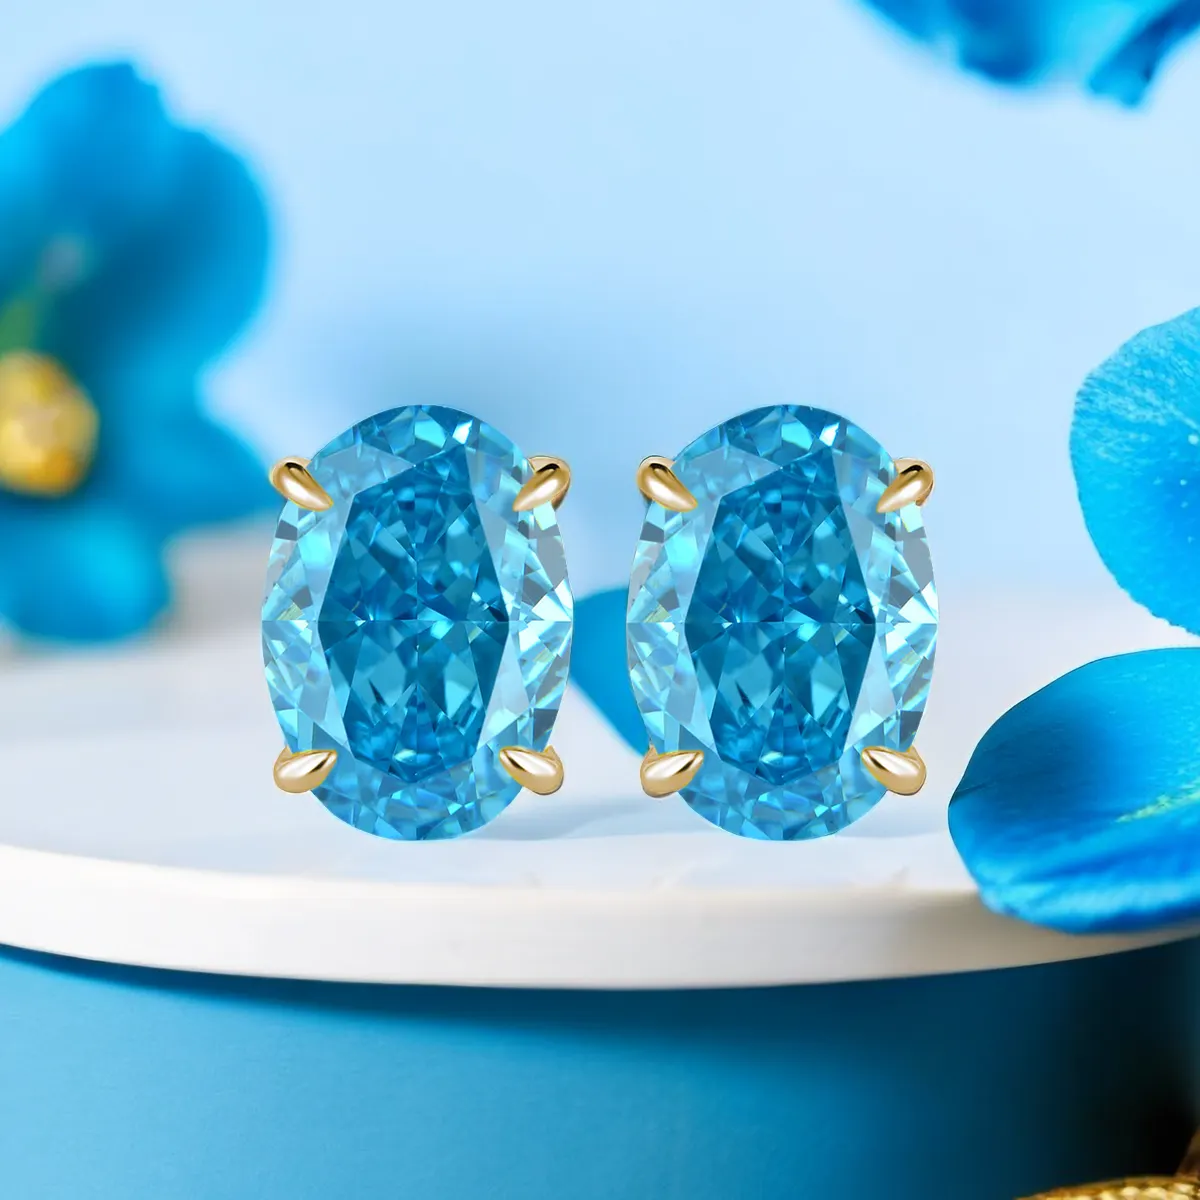 S925 argent plaqué platine et or ovale glace mignon topaze bleu boucles d'oreilles exquis boucles d'oreilles élégantes pour les filles pour la fête